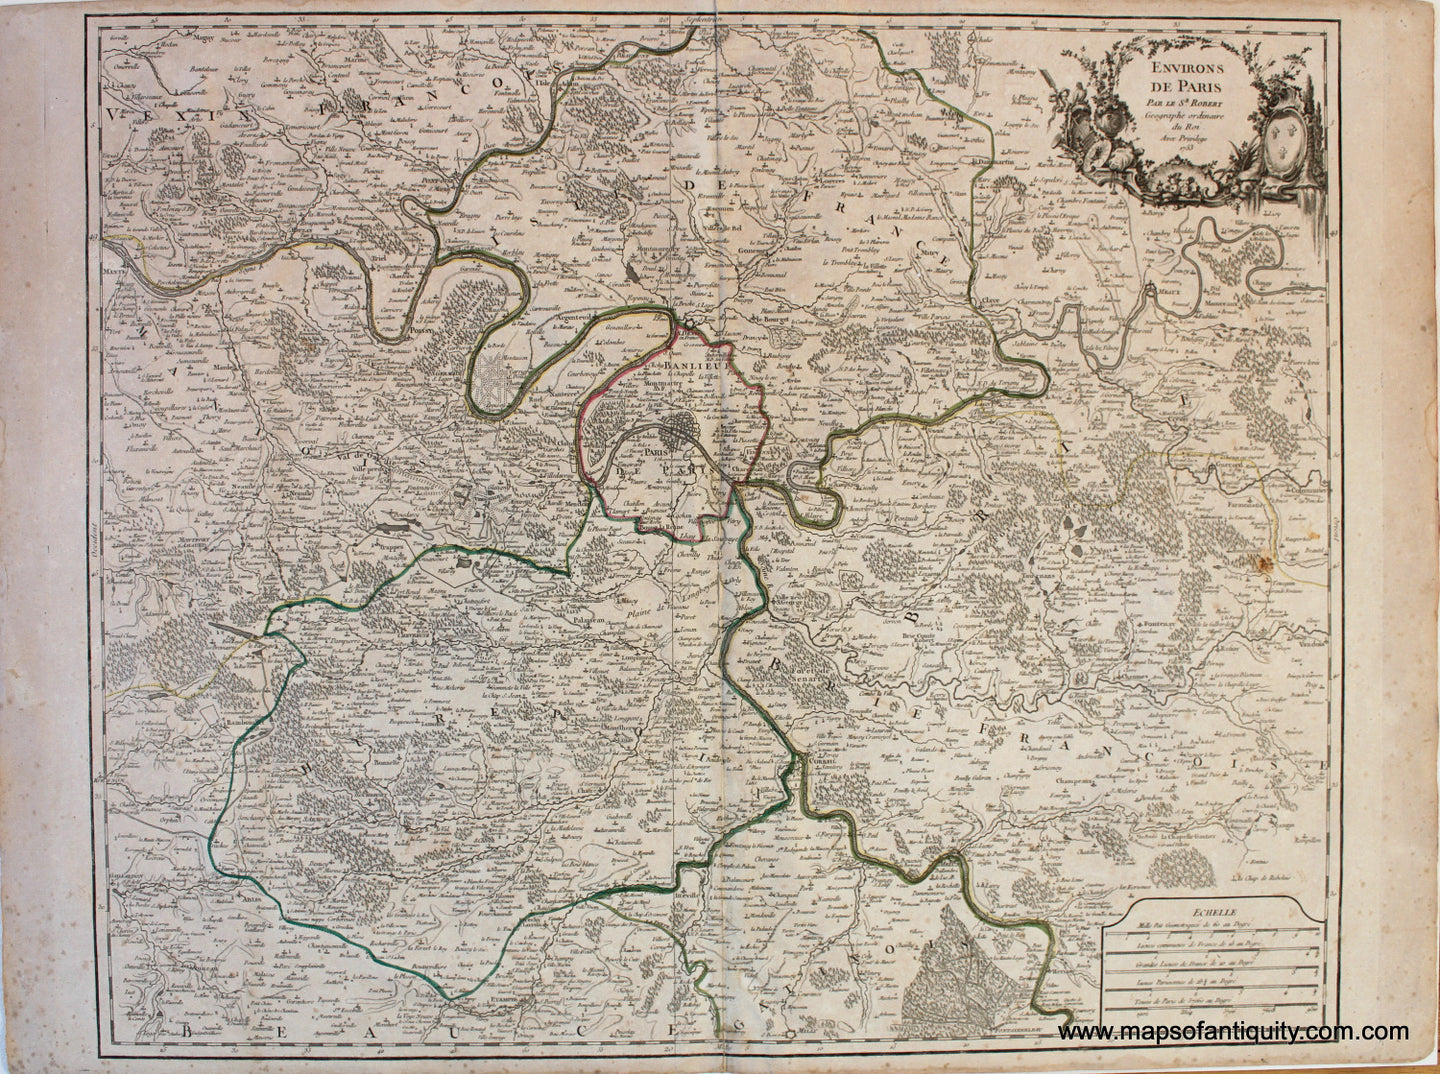 Antique-Hand-Colored-Map-Environs-de-Paris-Europe-France-1753-Vaugondy-Maps-Of-Antiquity